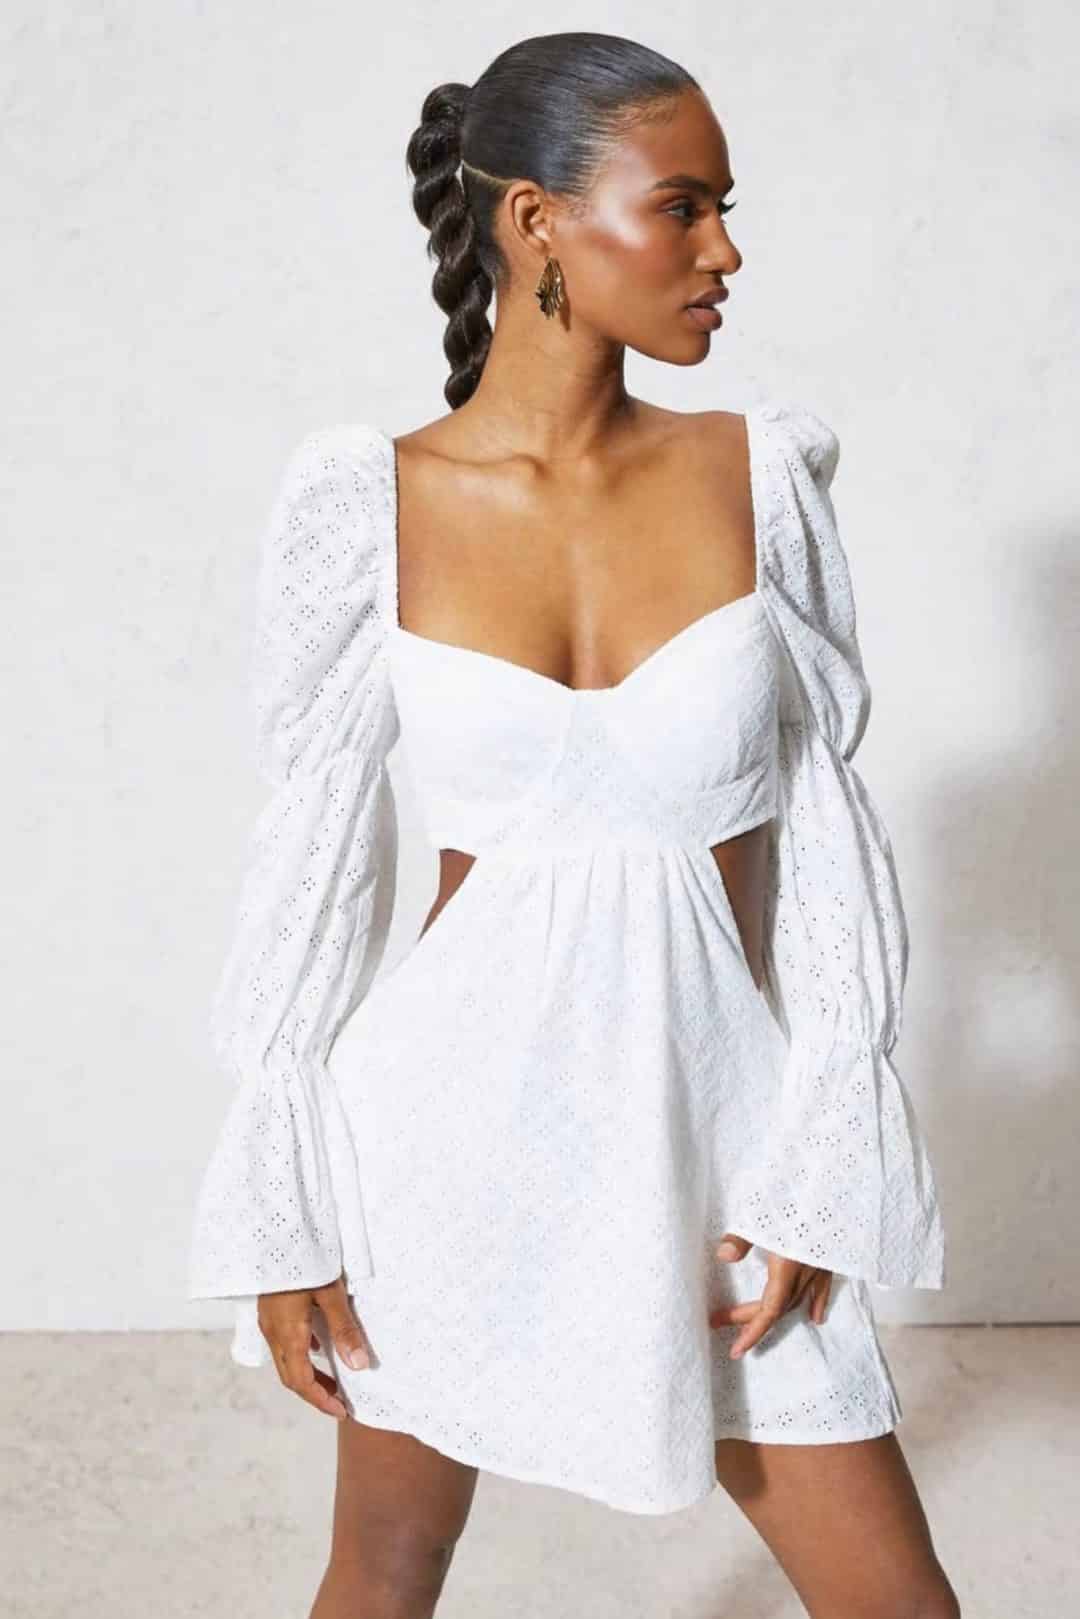 White summer dresses